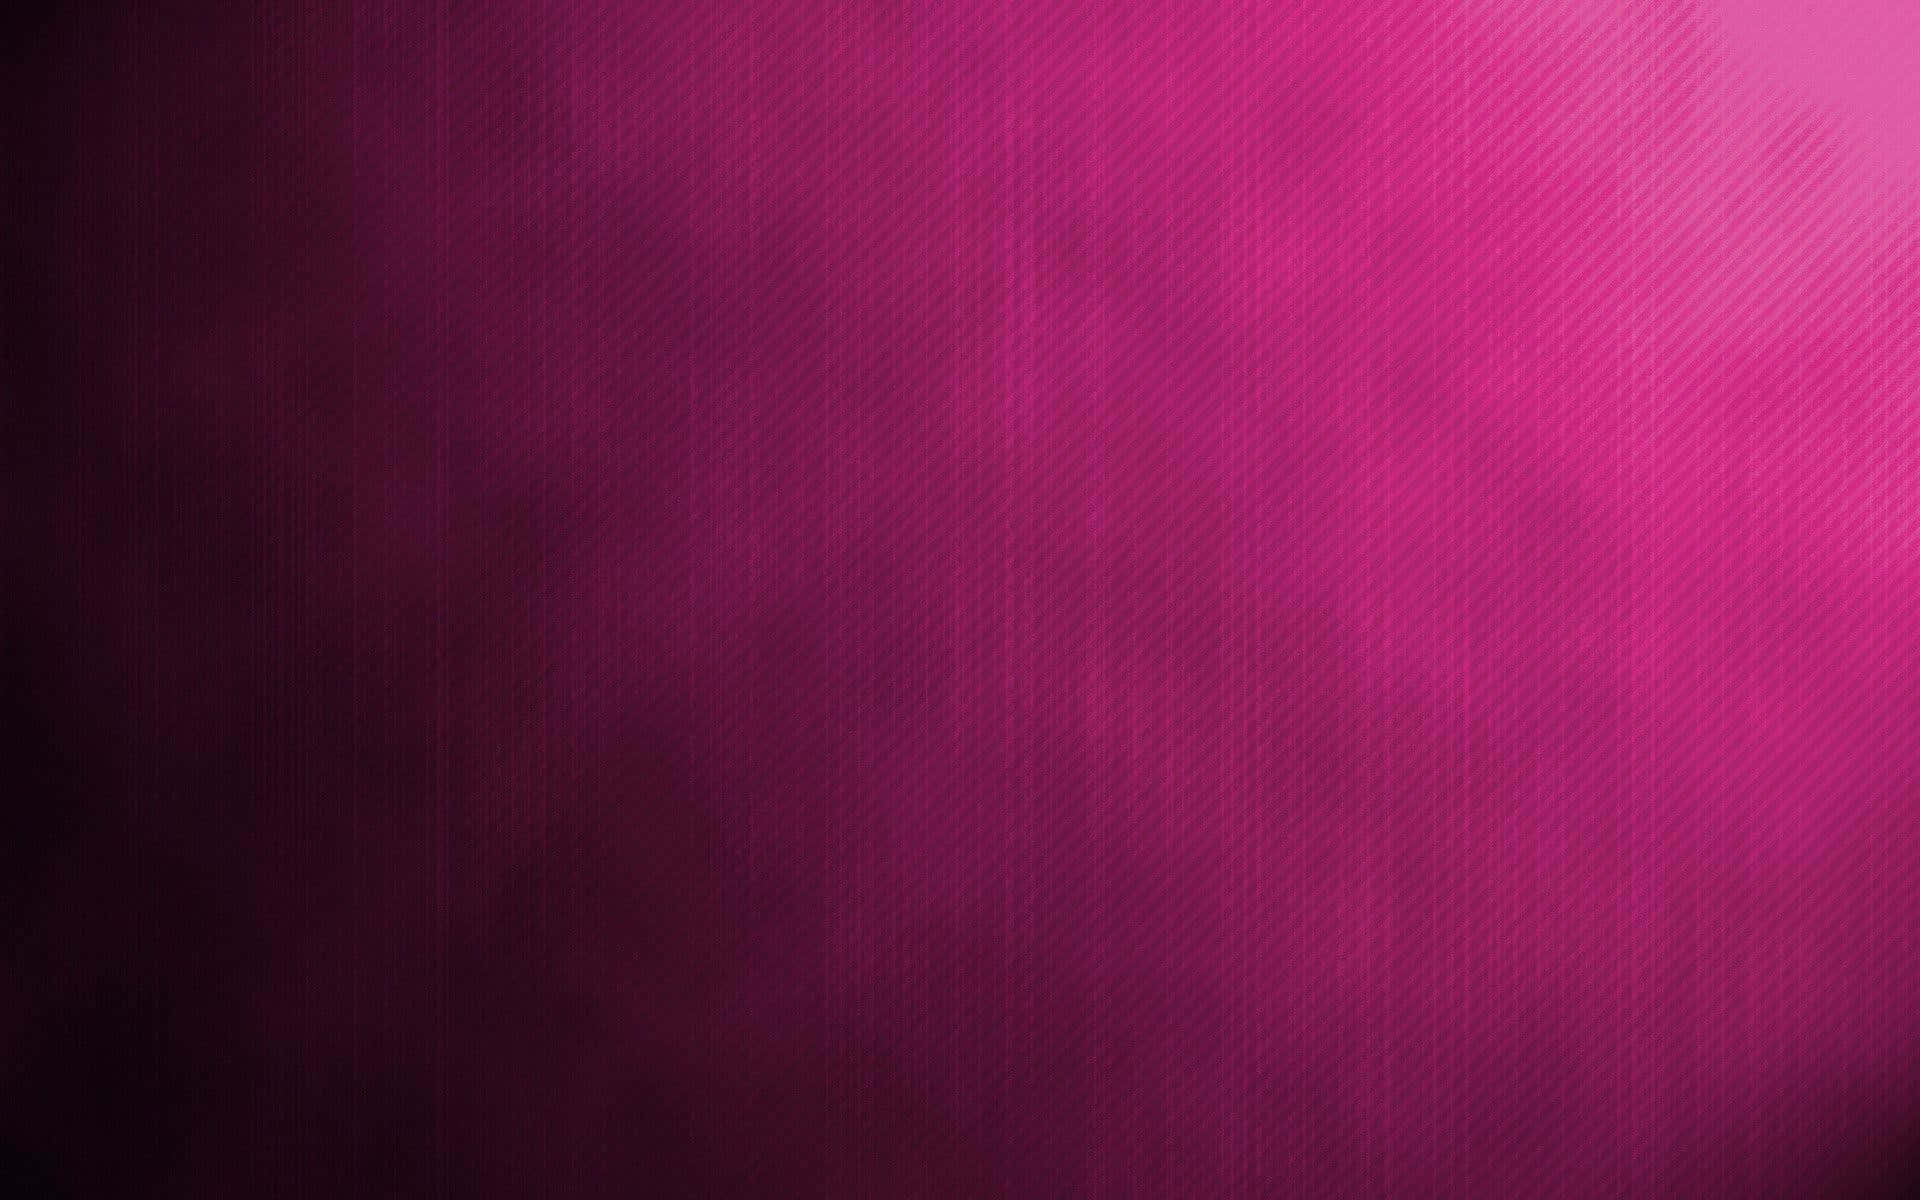 Einabstrakter Weichzeichnungseffekt In Dunklem Pink. Wallpaper